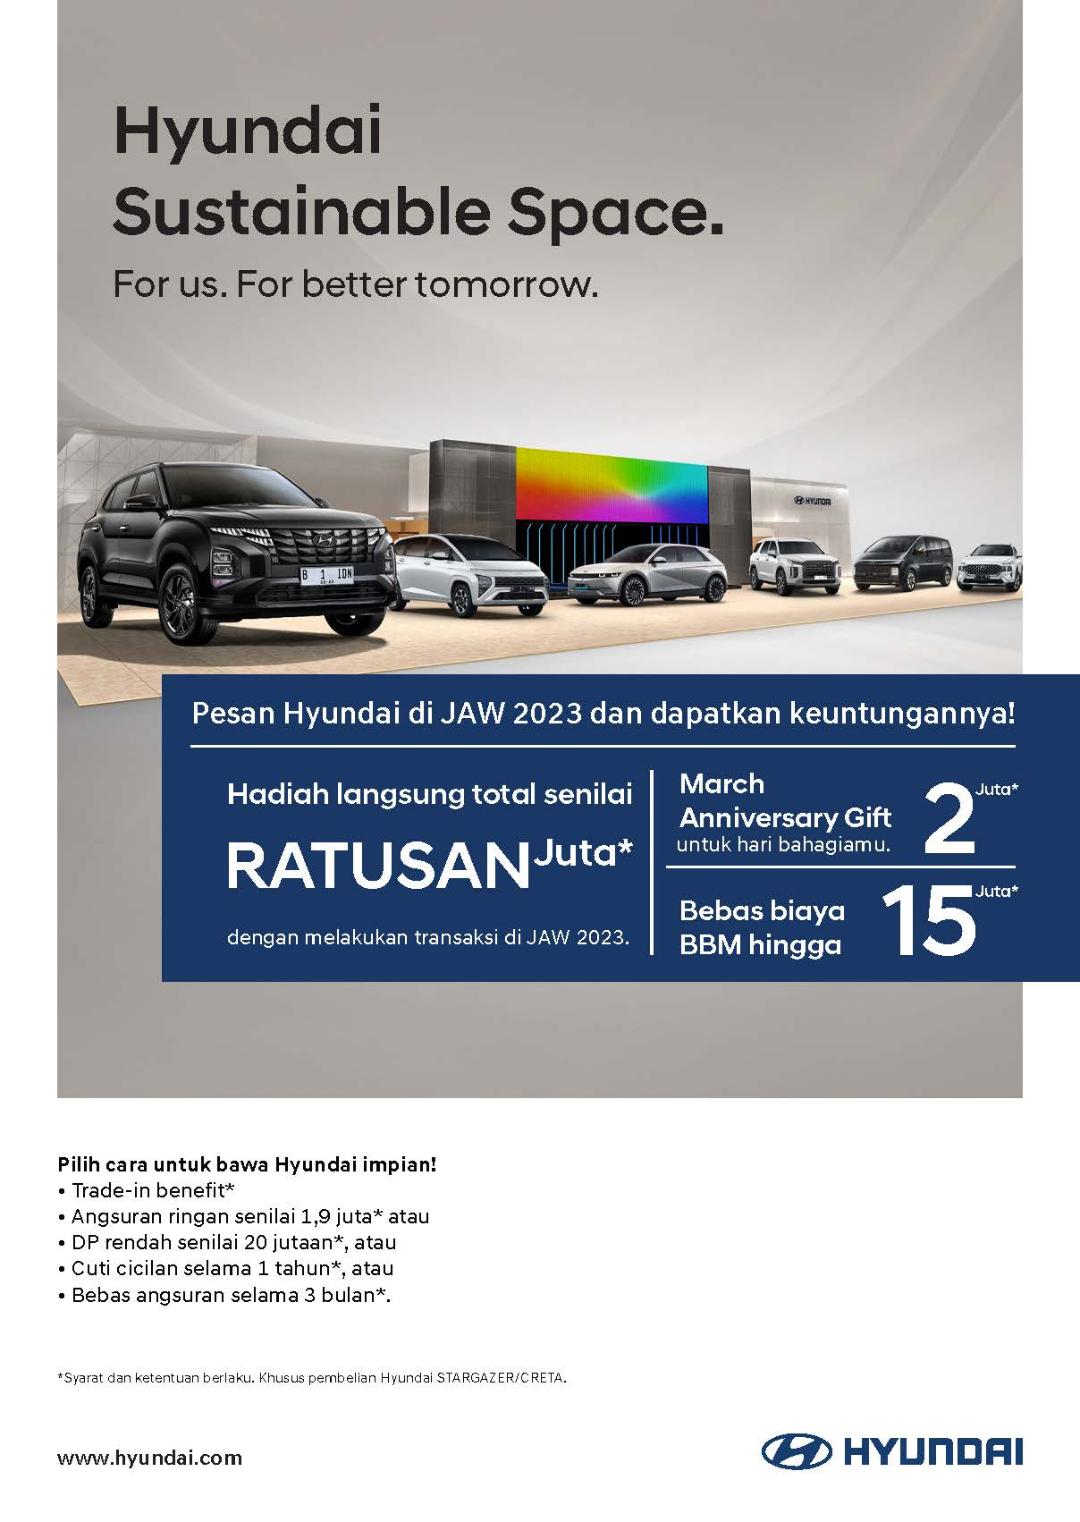 Hyundai Sambut Perhelatan JAW 2023 dan Ramadan dengan Ragam Program Menarik untuk Konsumen